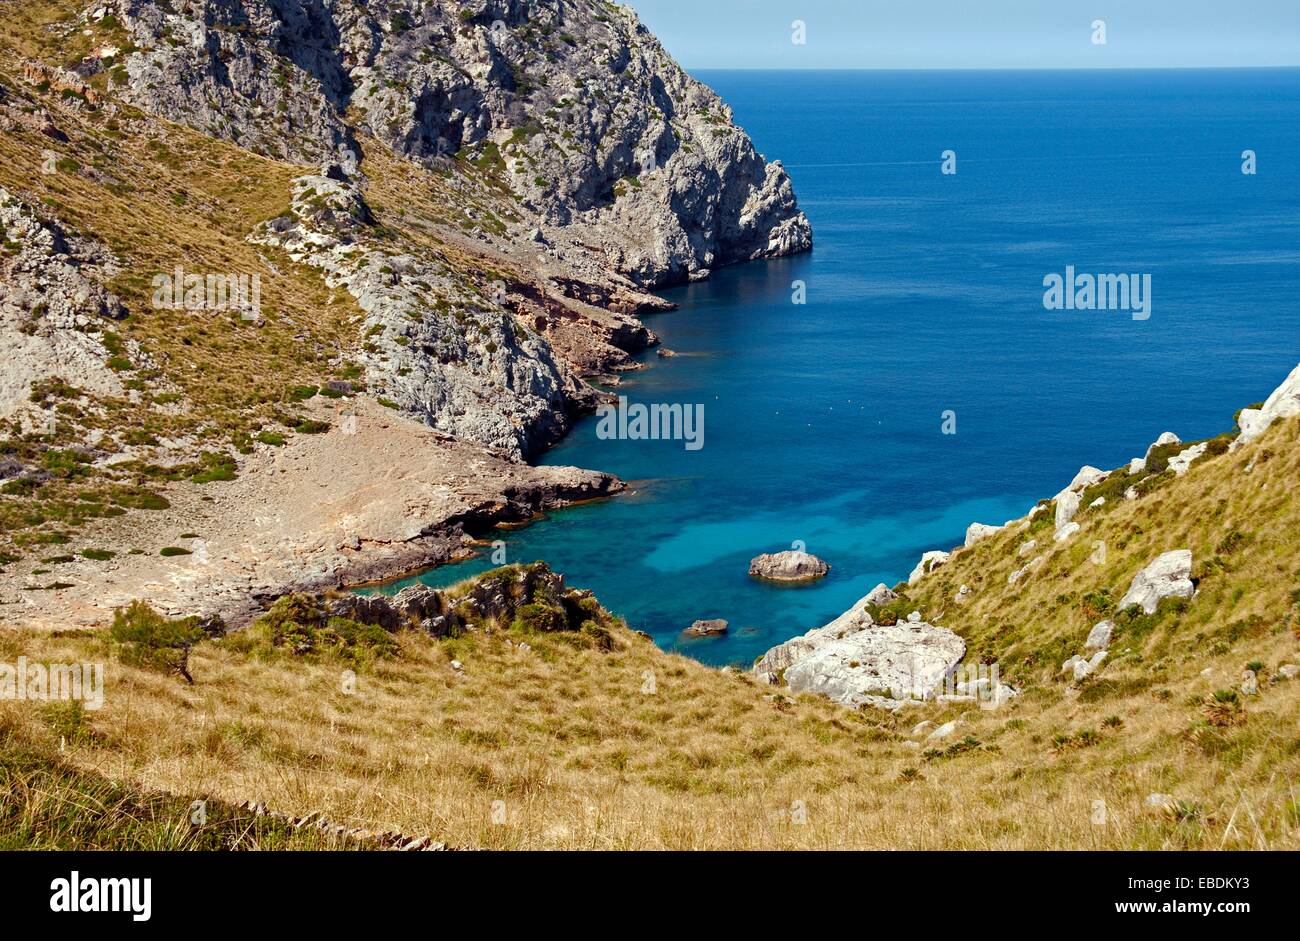 La región de la costa de Mallorca, Alcudia, norte de Mallorca, Islas Baleares, España, Europa Foto de stock